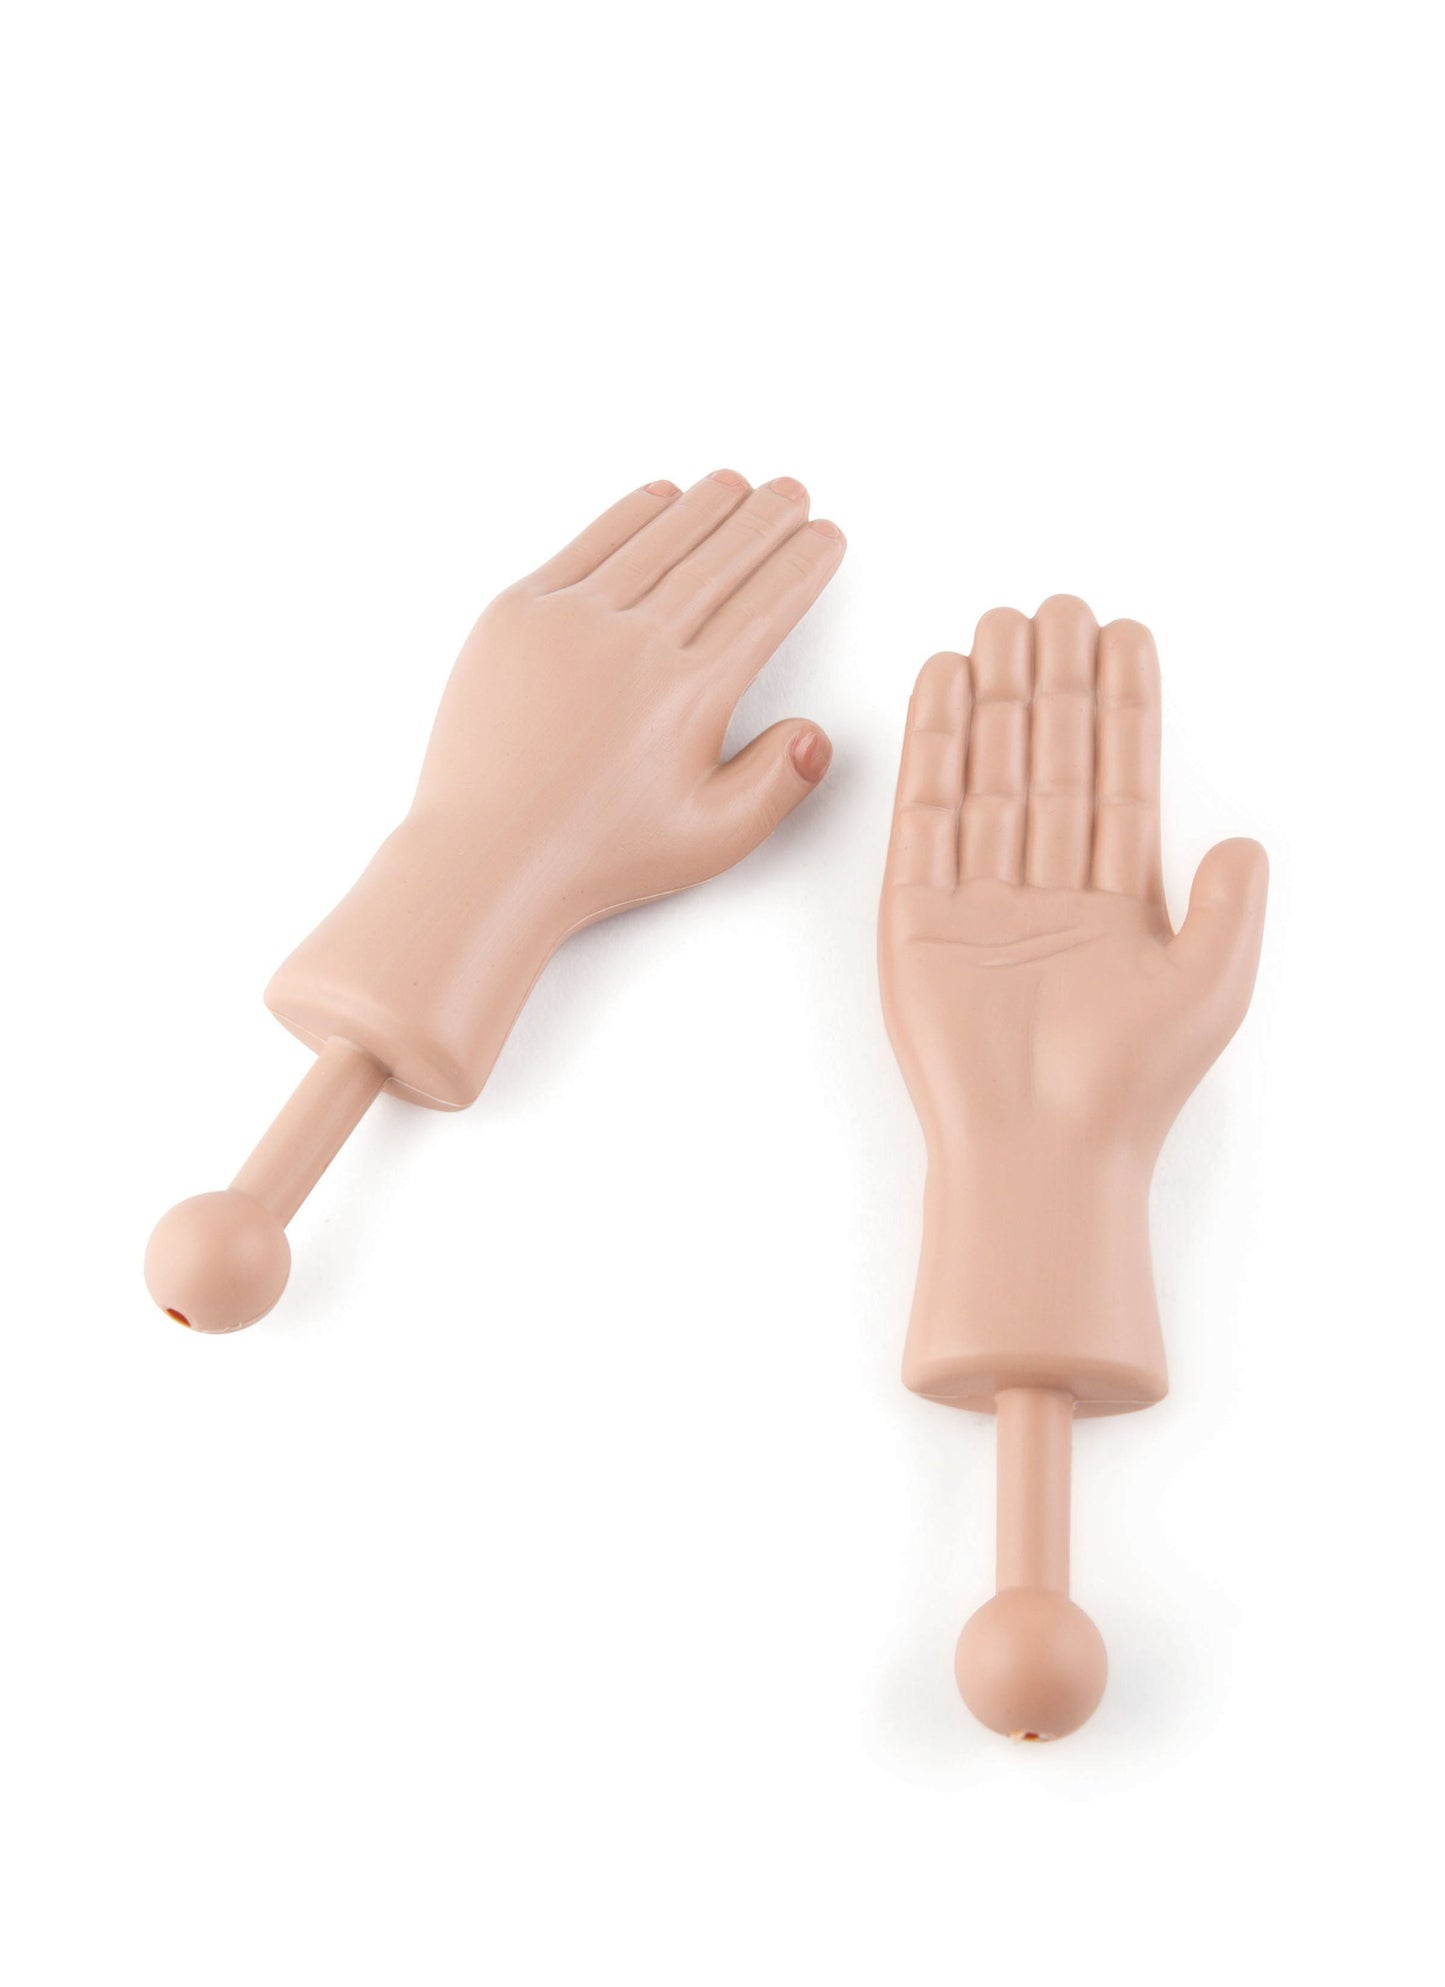 DR DINGUS Tiny Hands (1 Pair) - Original Mini Little Hand Stick